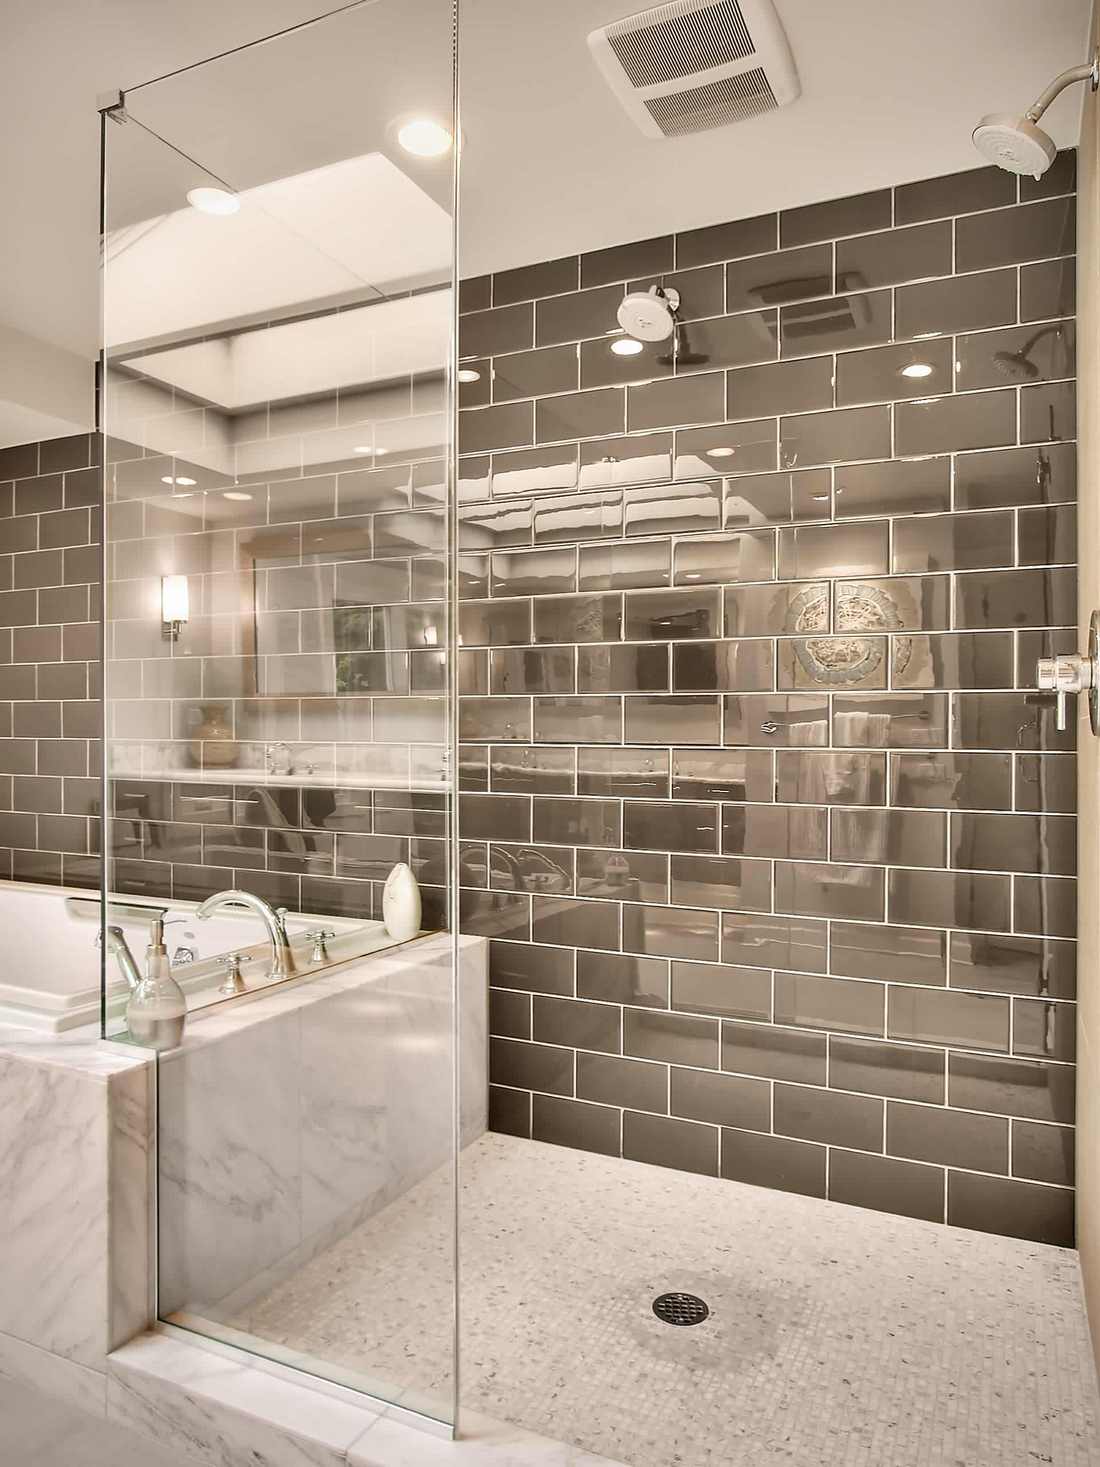 Modern fürdőszoba márvány fürdőkáddal, dupla üvegfalú zuhanyfülkével. A zuhanyfülke padlója mozaik, a fal kobaltszürke tükör metro csempével burkolt.